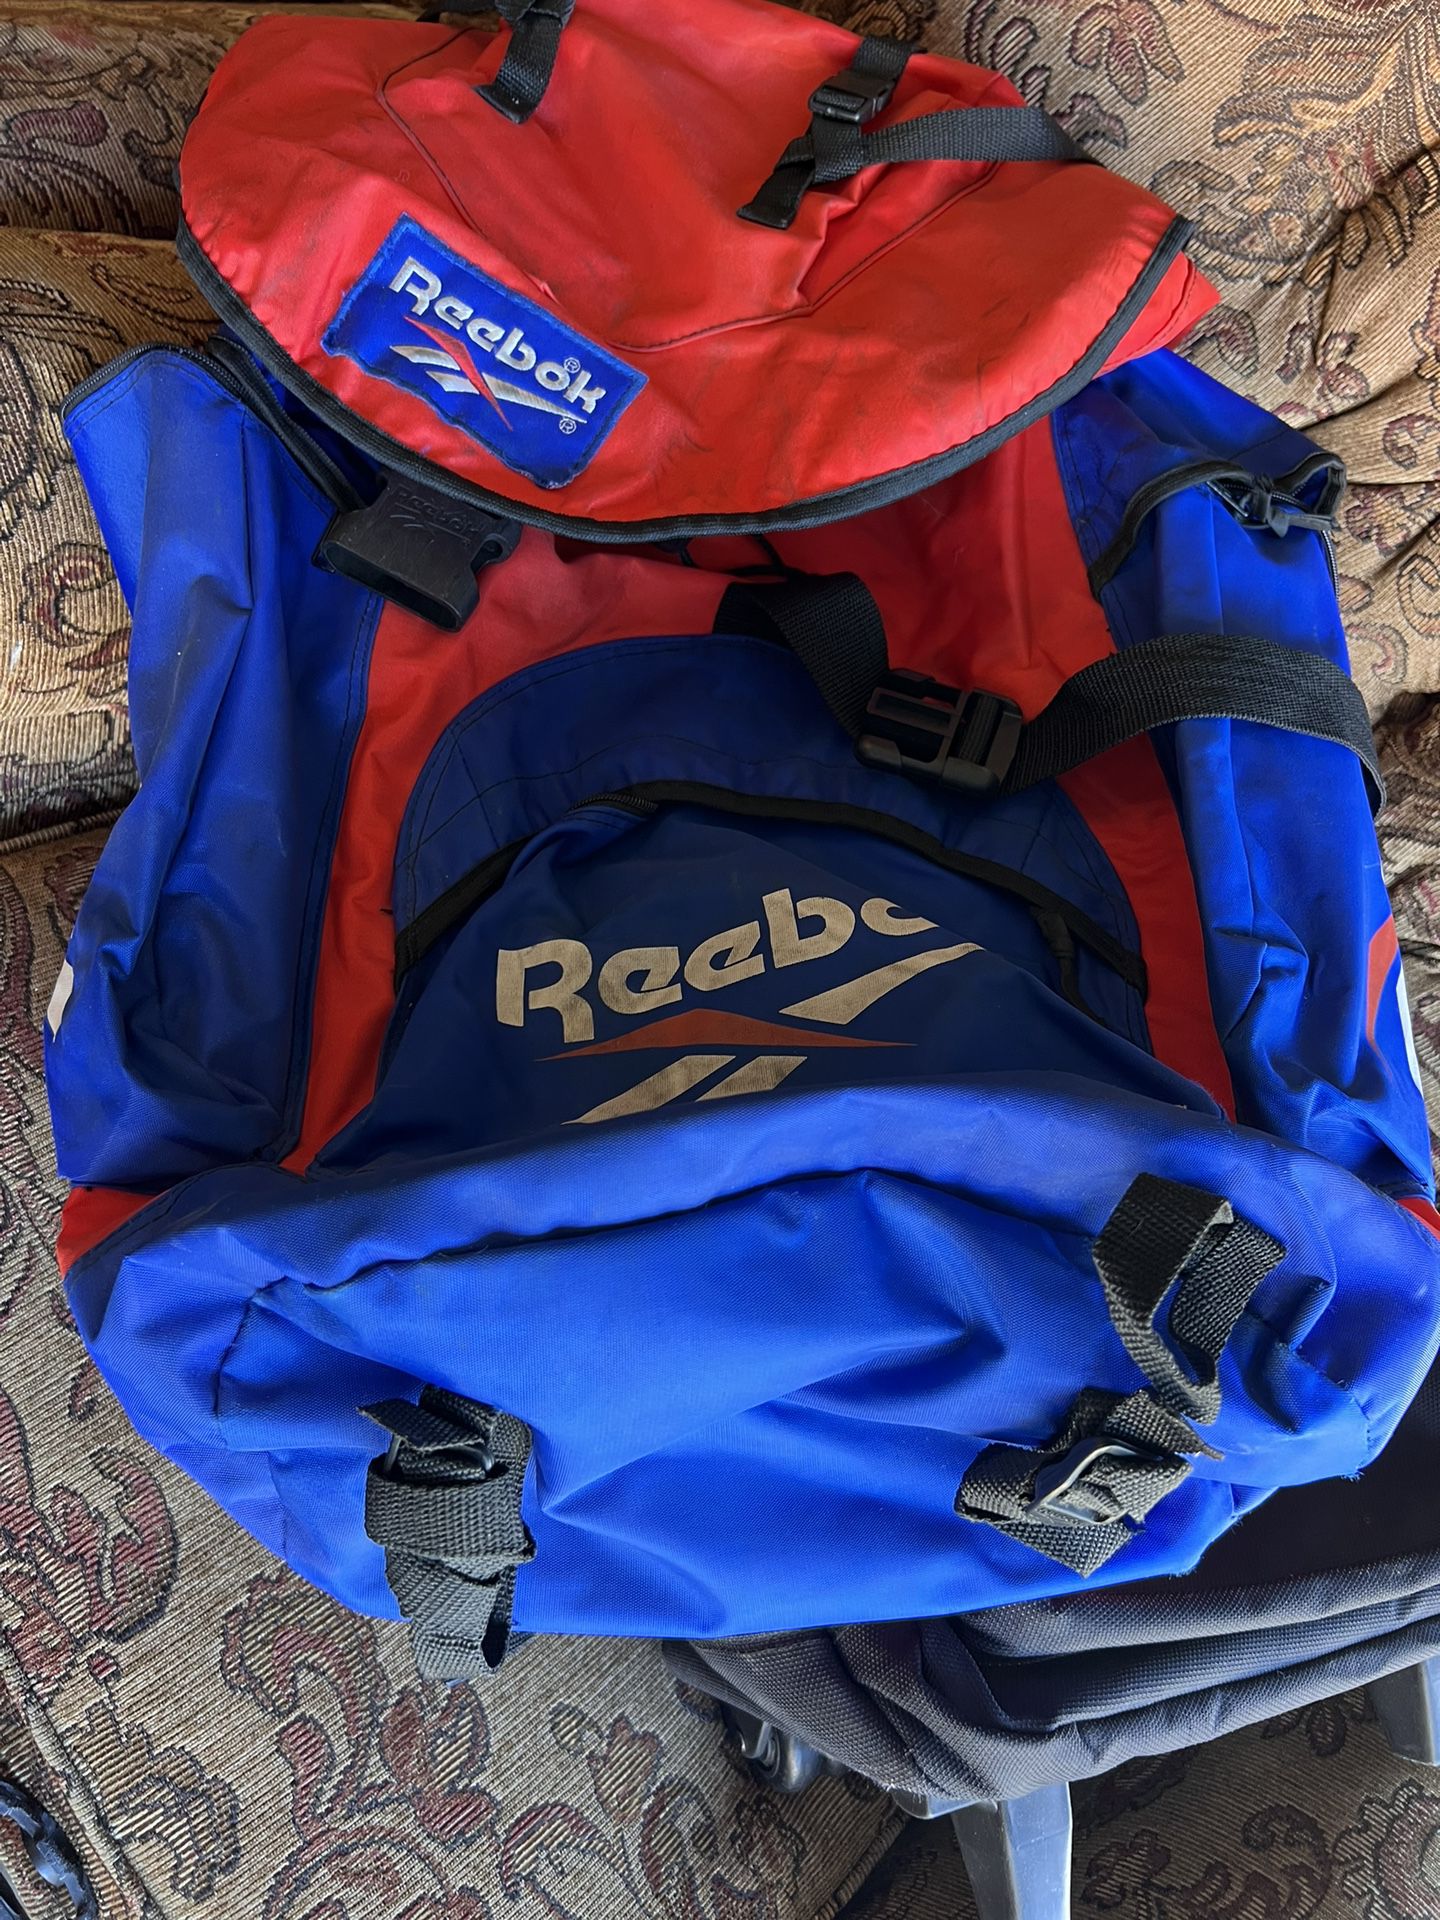 Reebok hiking backpack 